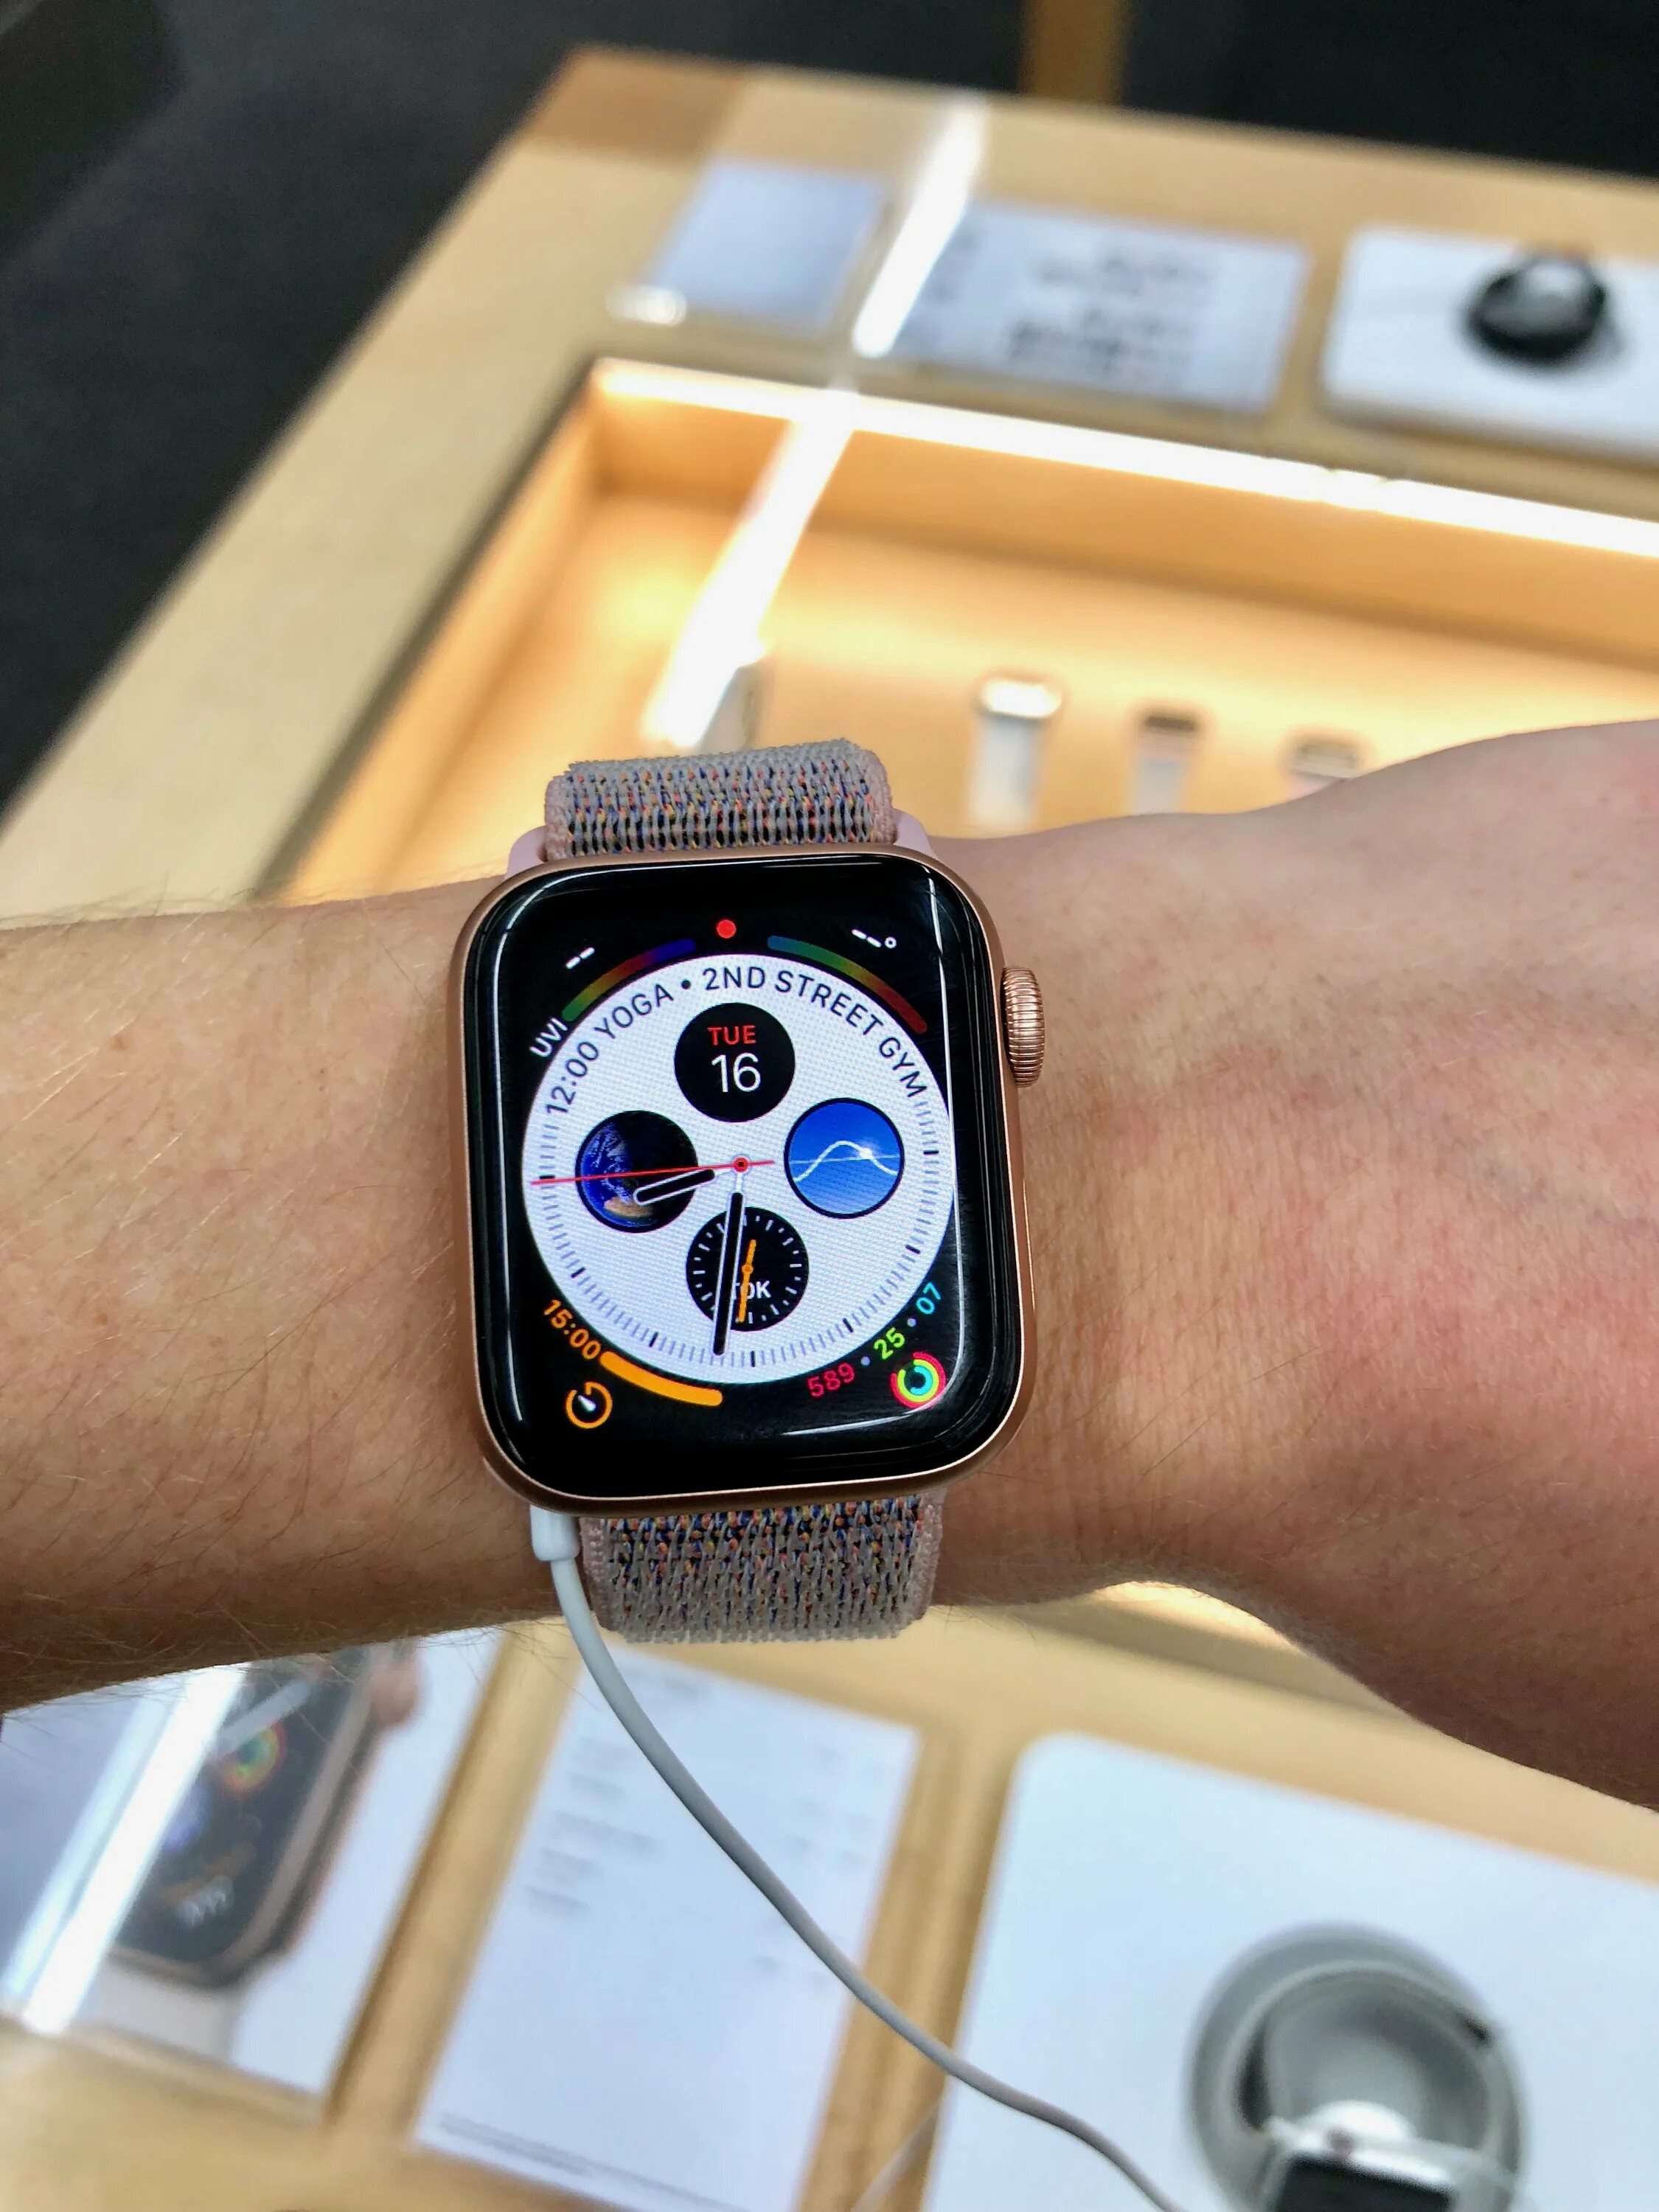 Apple watch se 44mm. Apple watch 40mm vs 44mm. Apple watch se 40mm vs 44mm. Apple watch 6 44 mm. Apple watch se 1 40mm